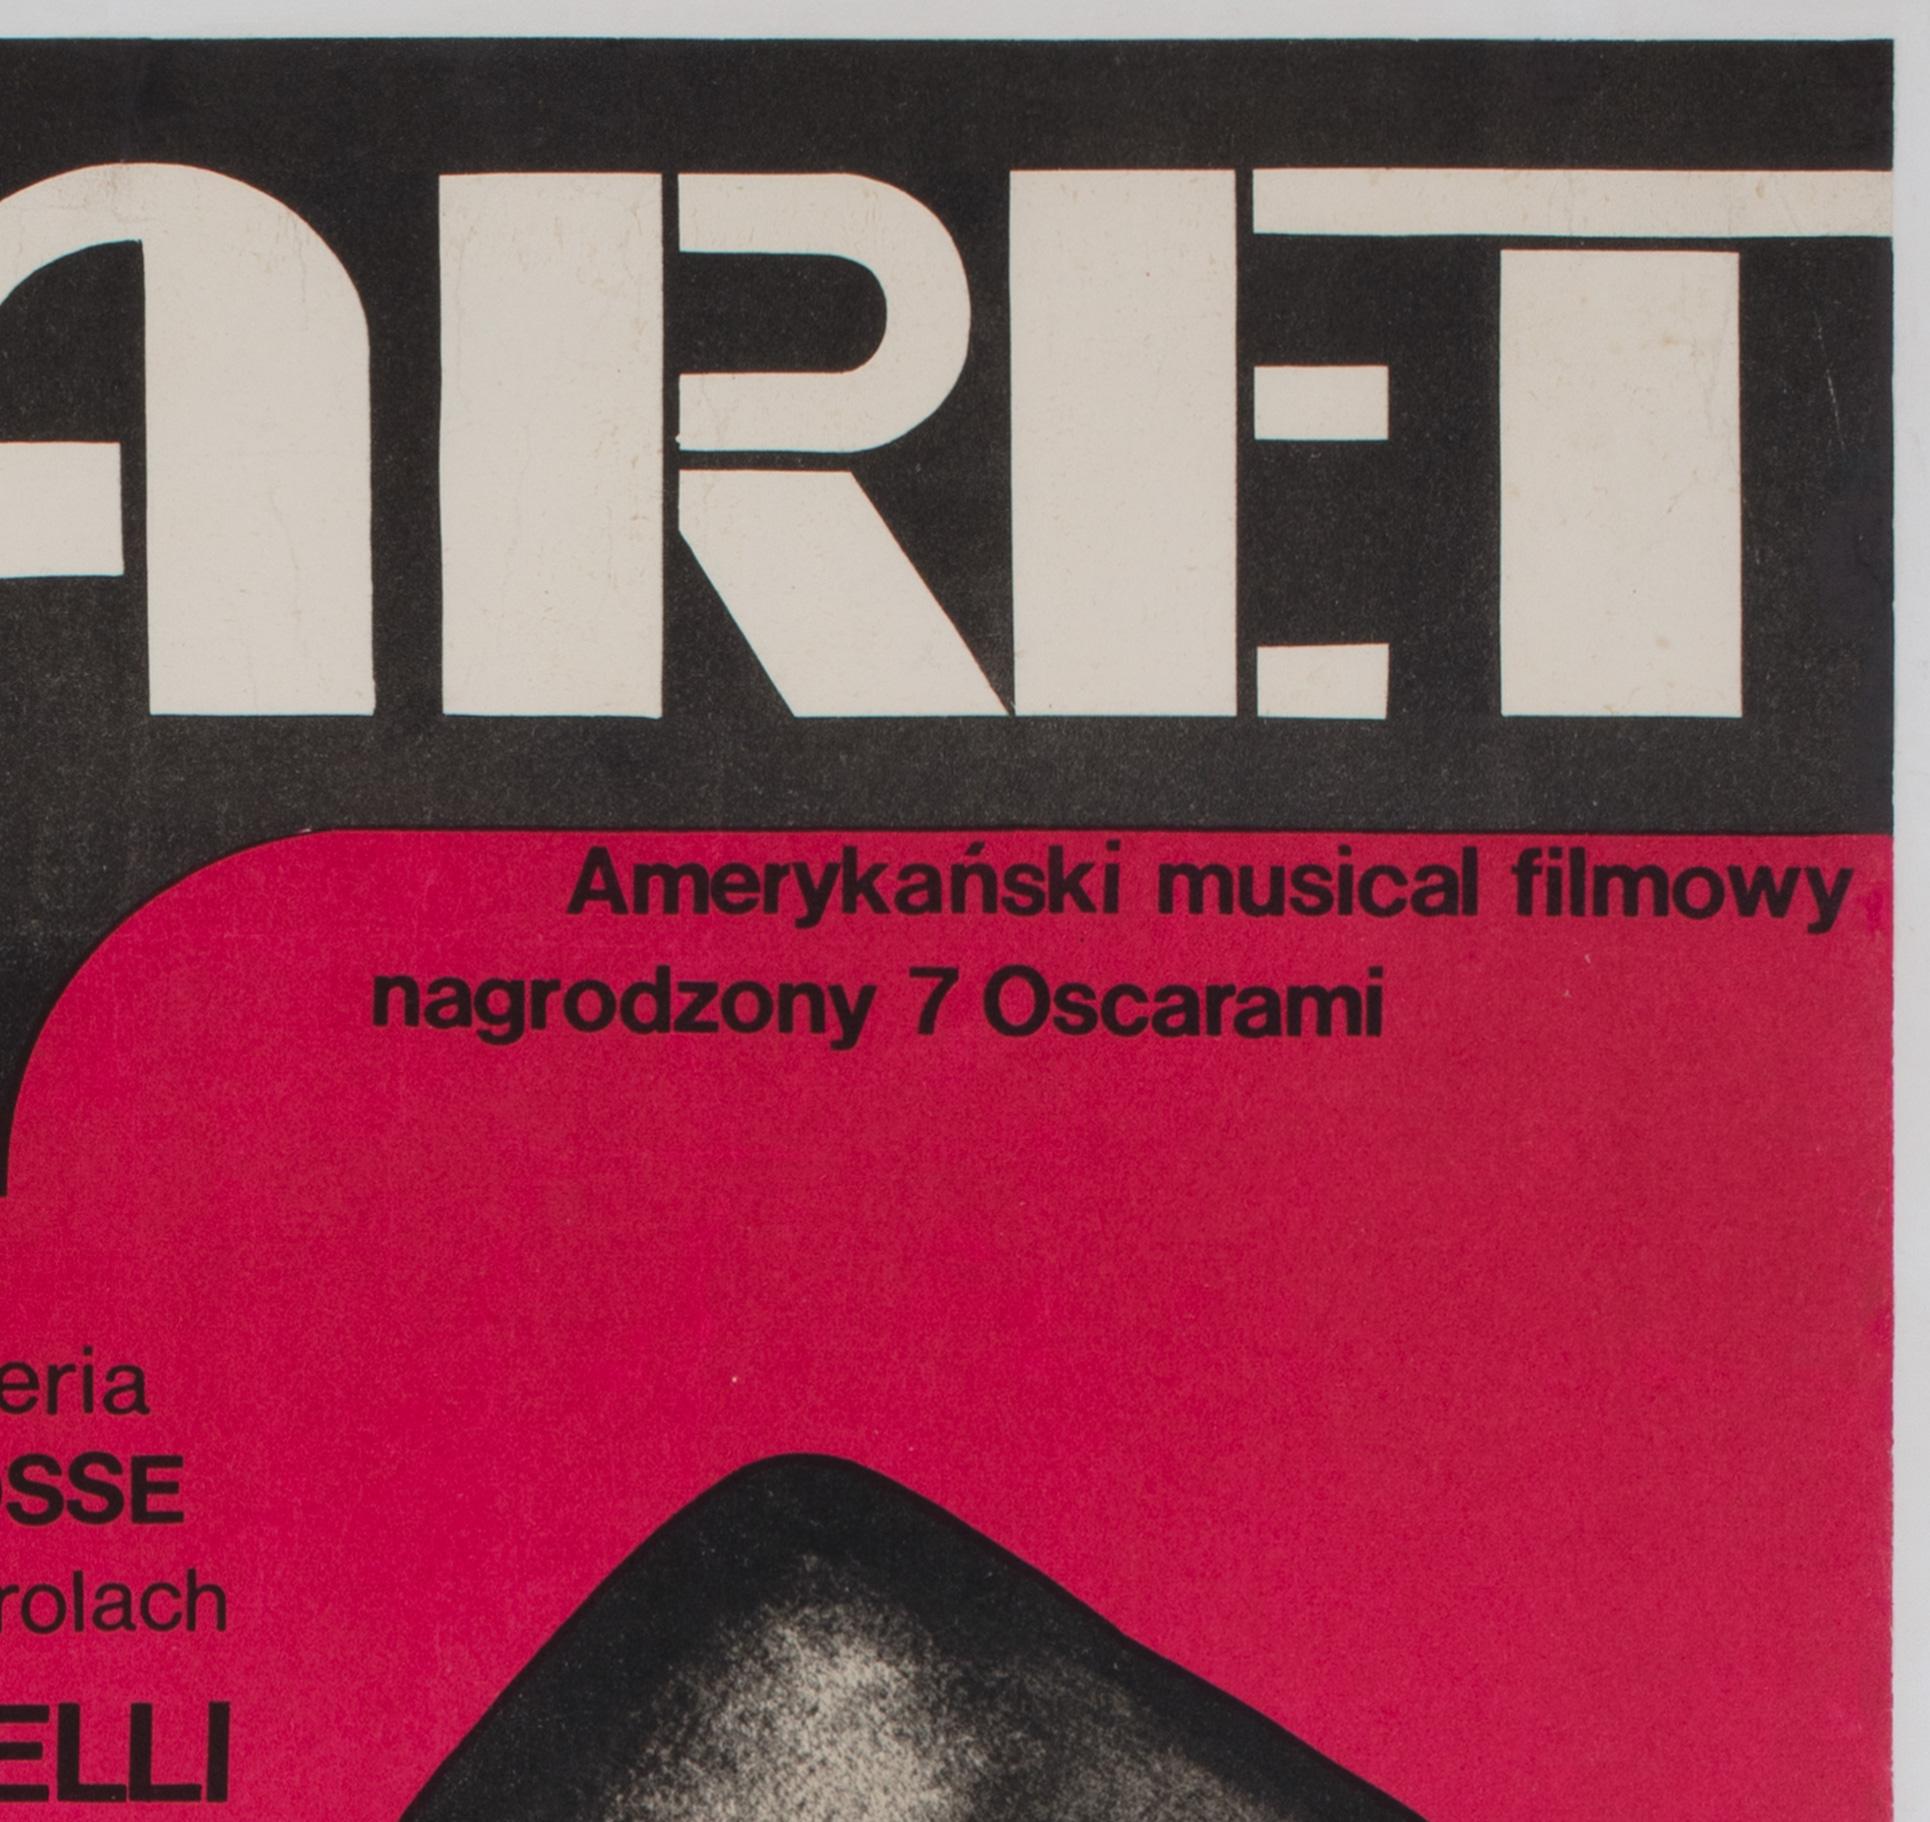 Cabaret 1973 Original Polish Film Poster, Wiktor Górka In Excellent Condition For Sale In Bath, Somerset